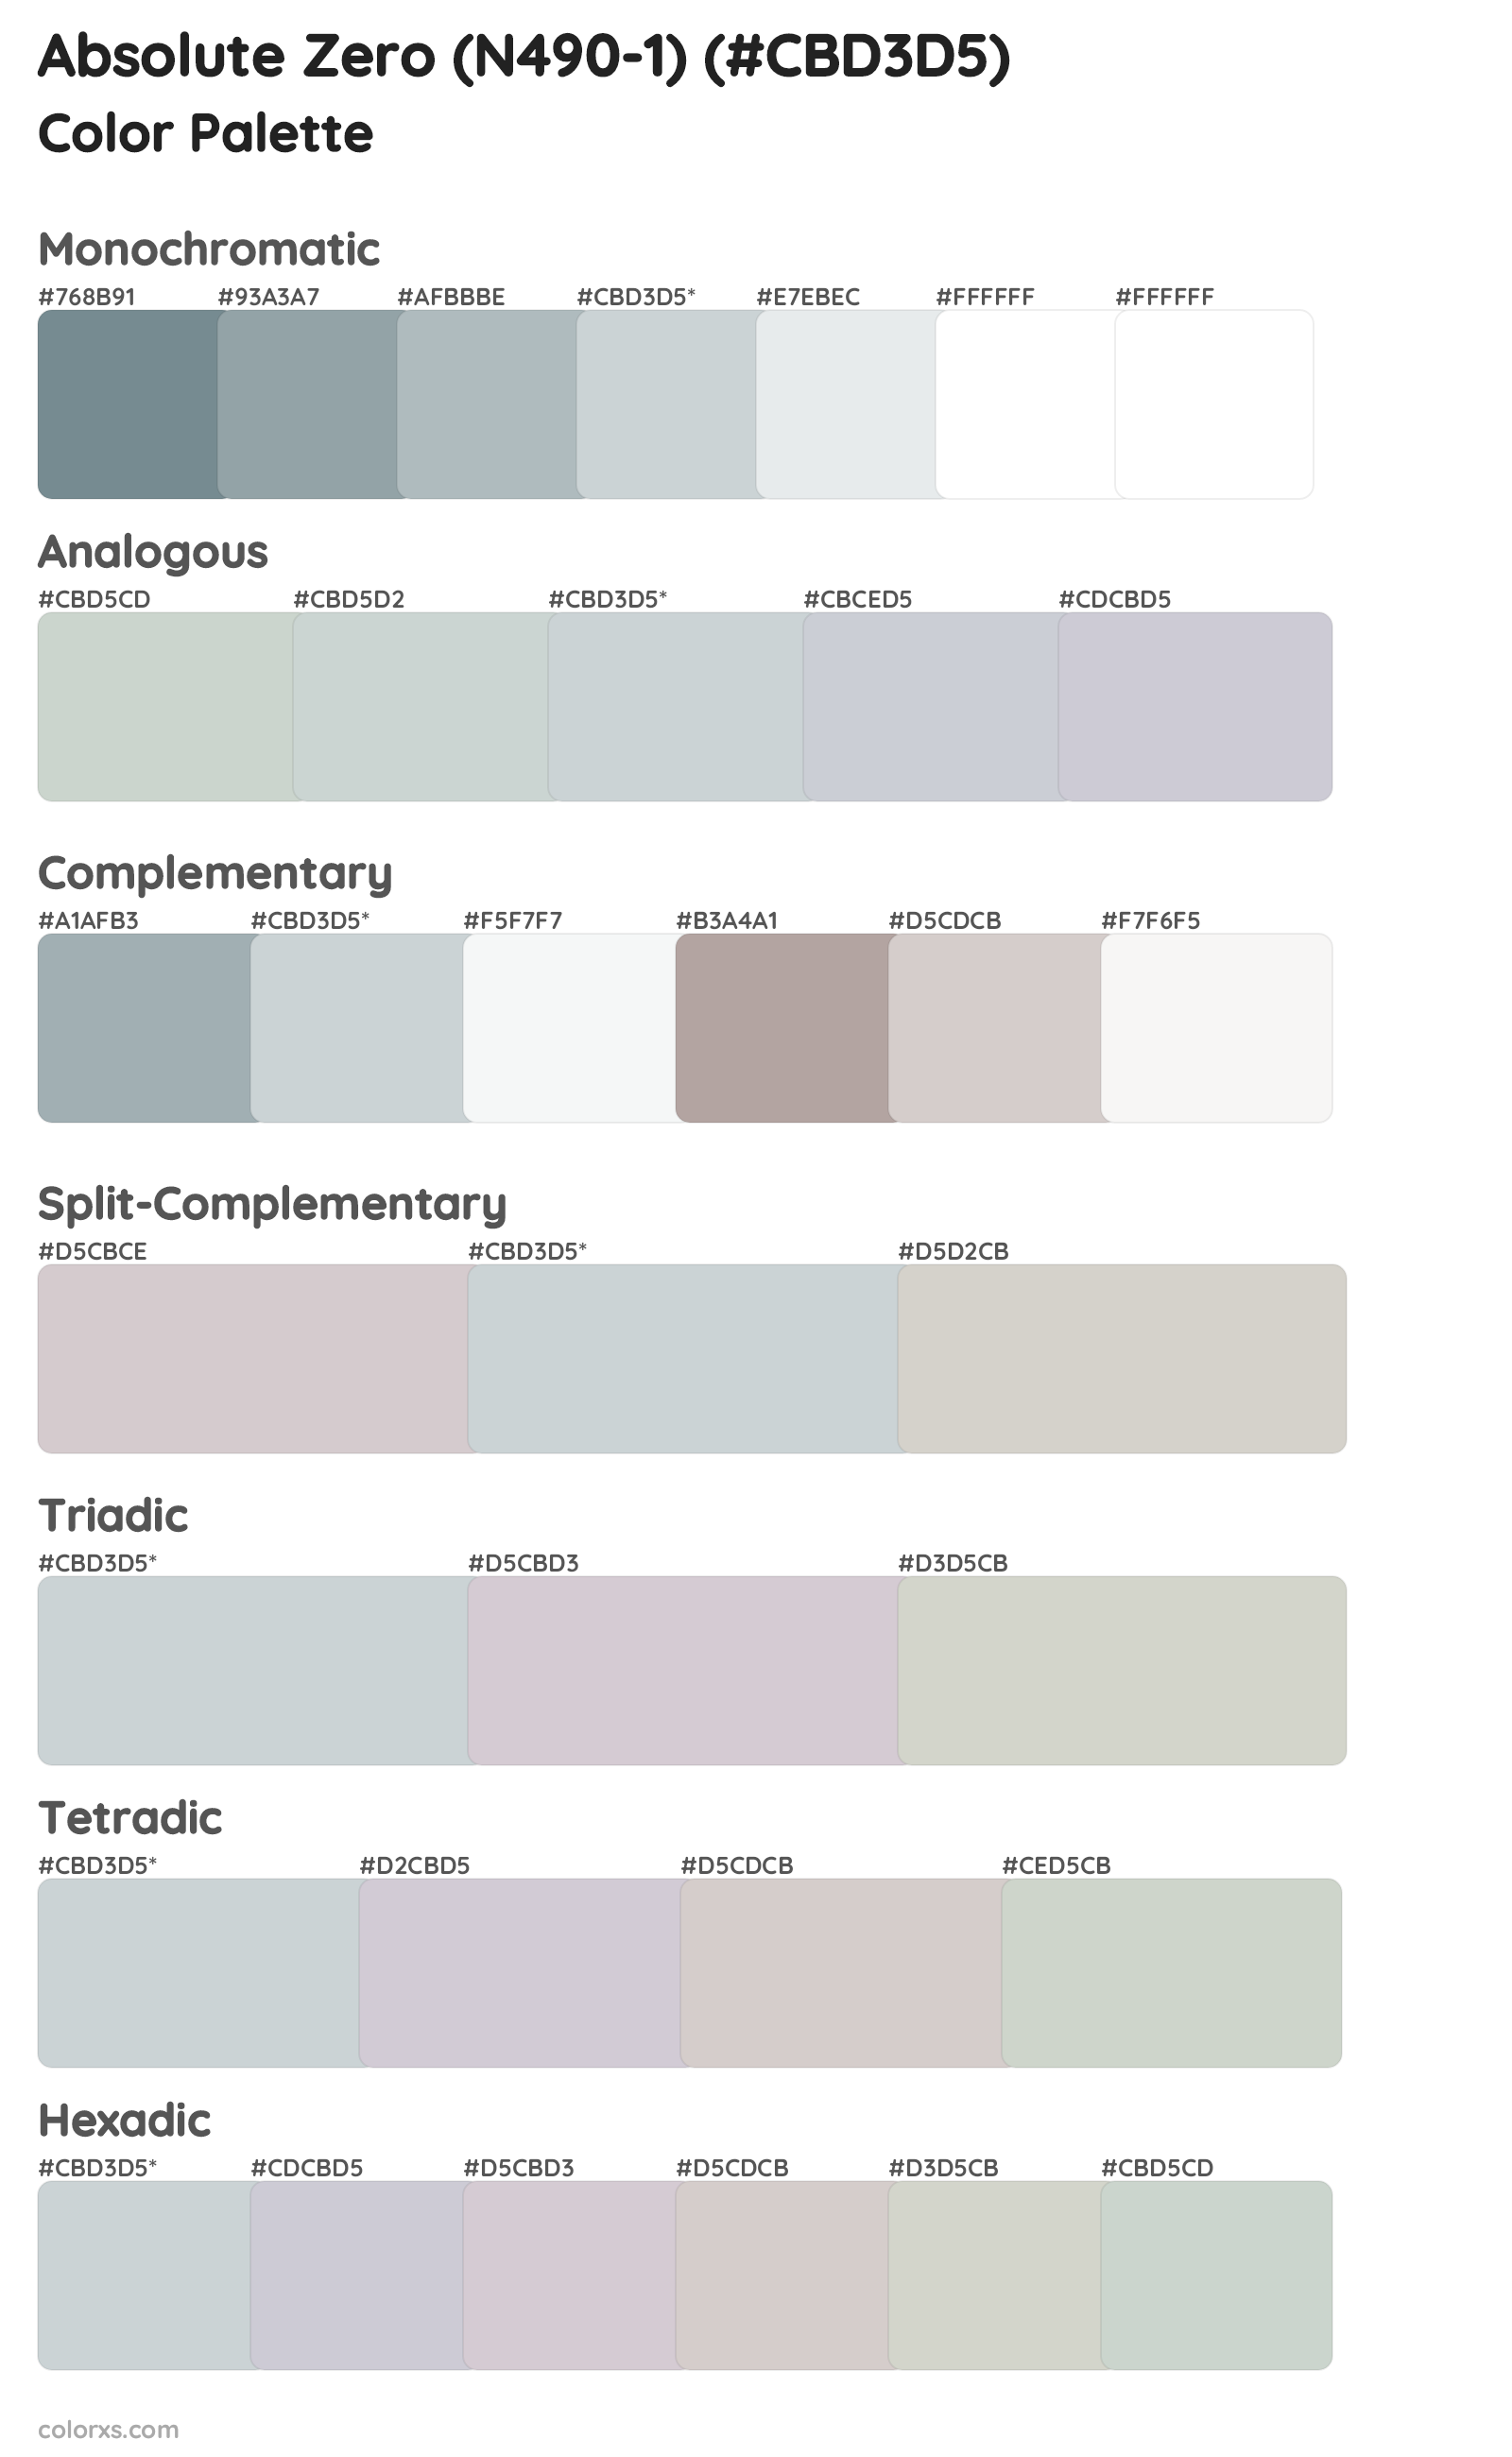 Absolute Zero (N490-1) Color Scheme Palettes